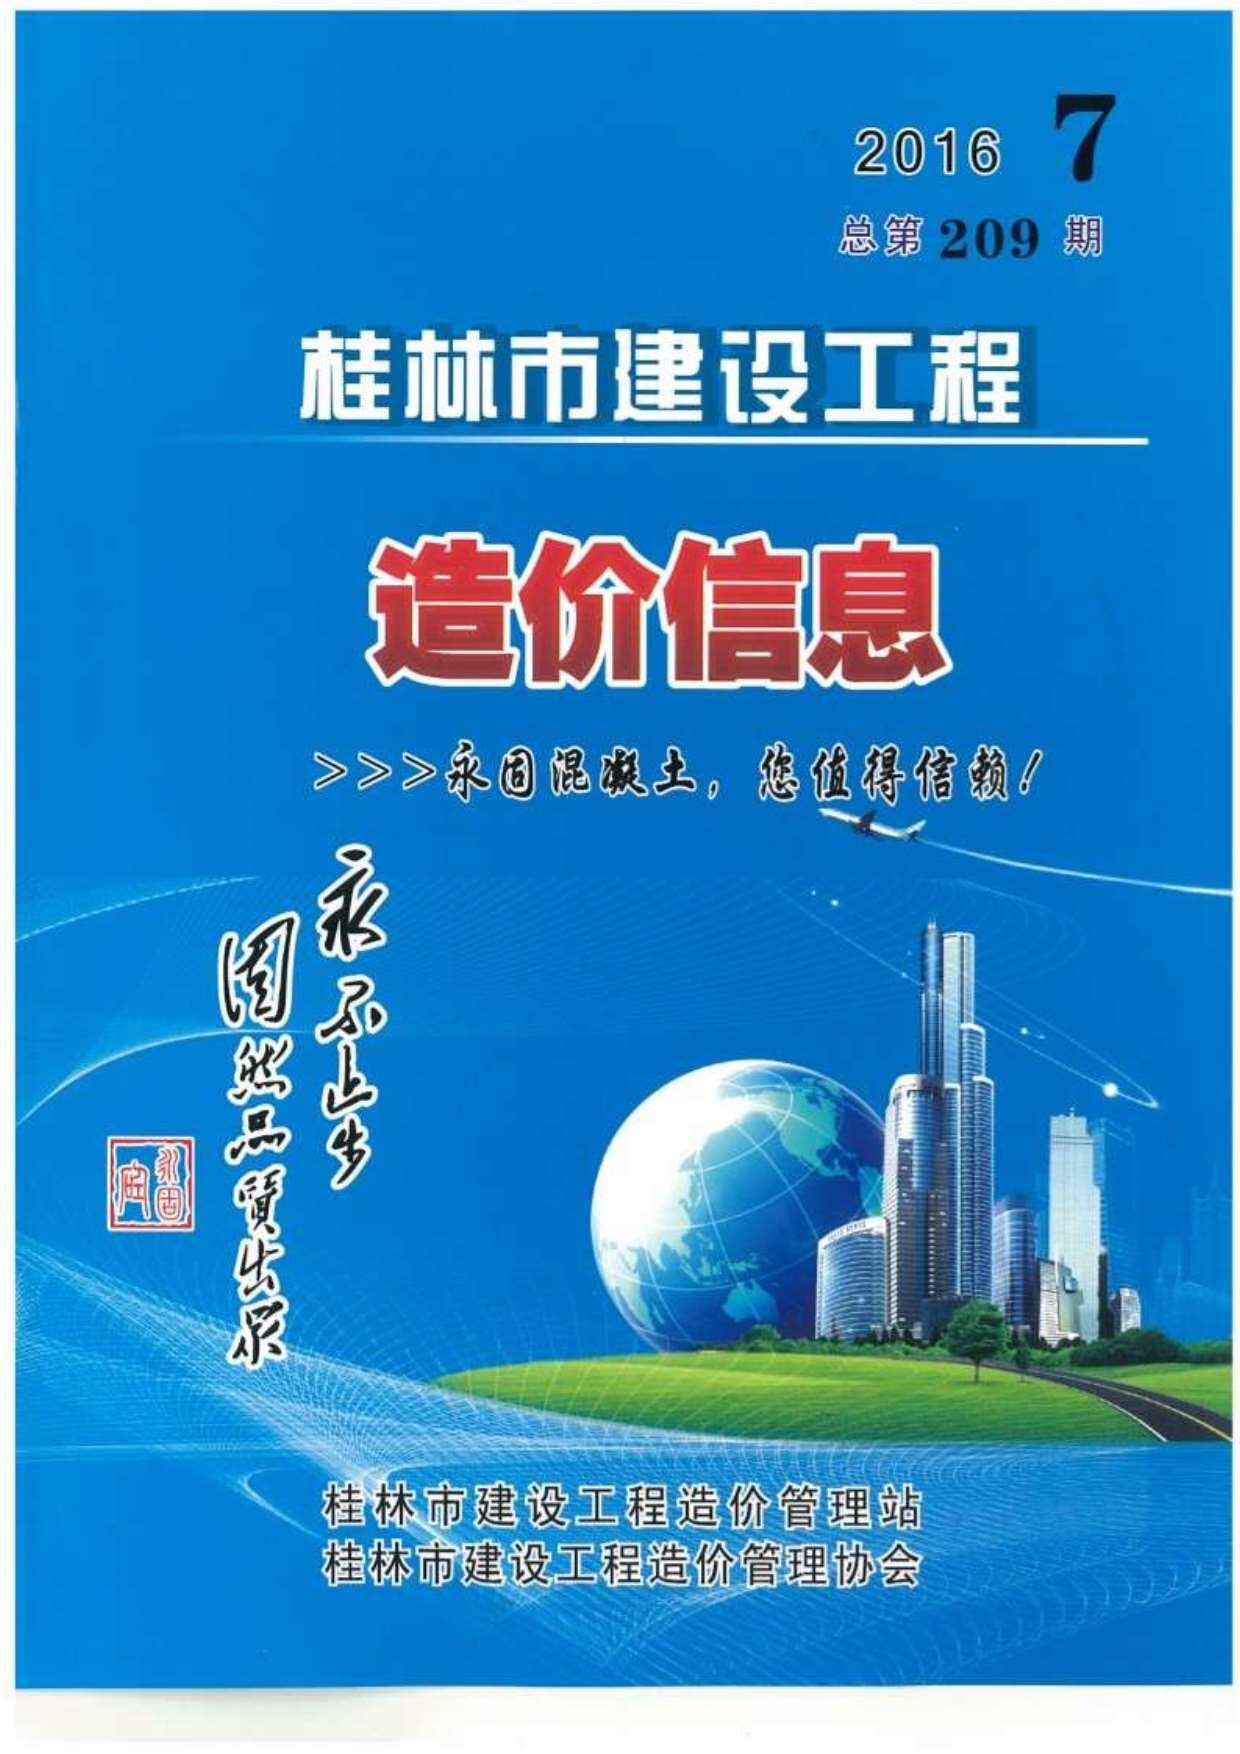 桂林市2016年7月工程造价信息期刊